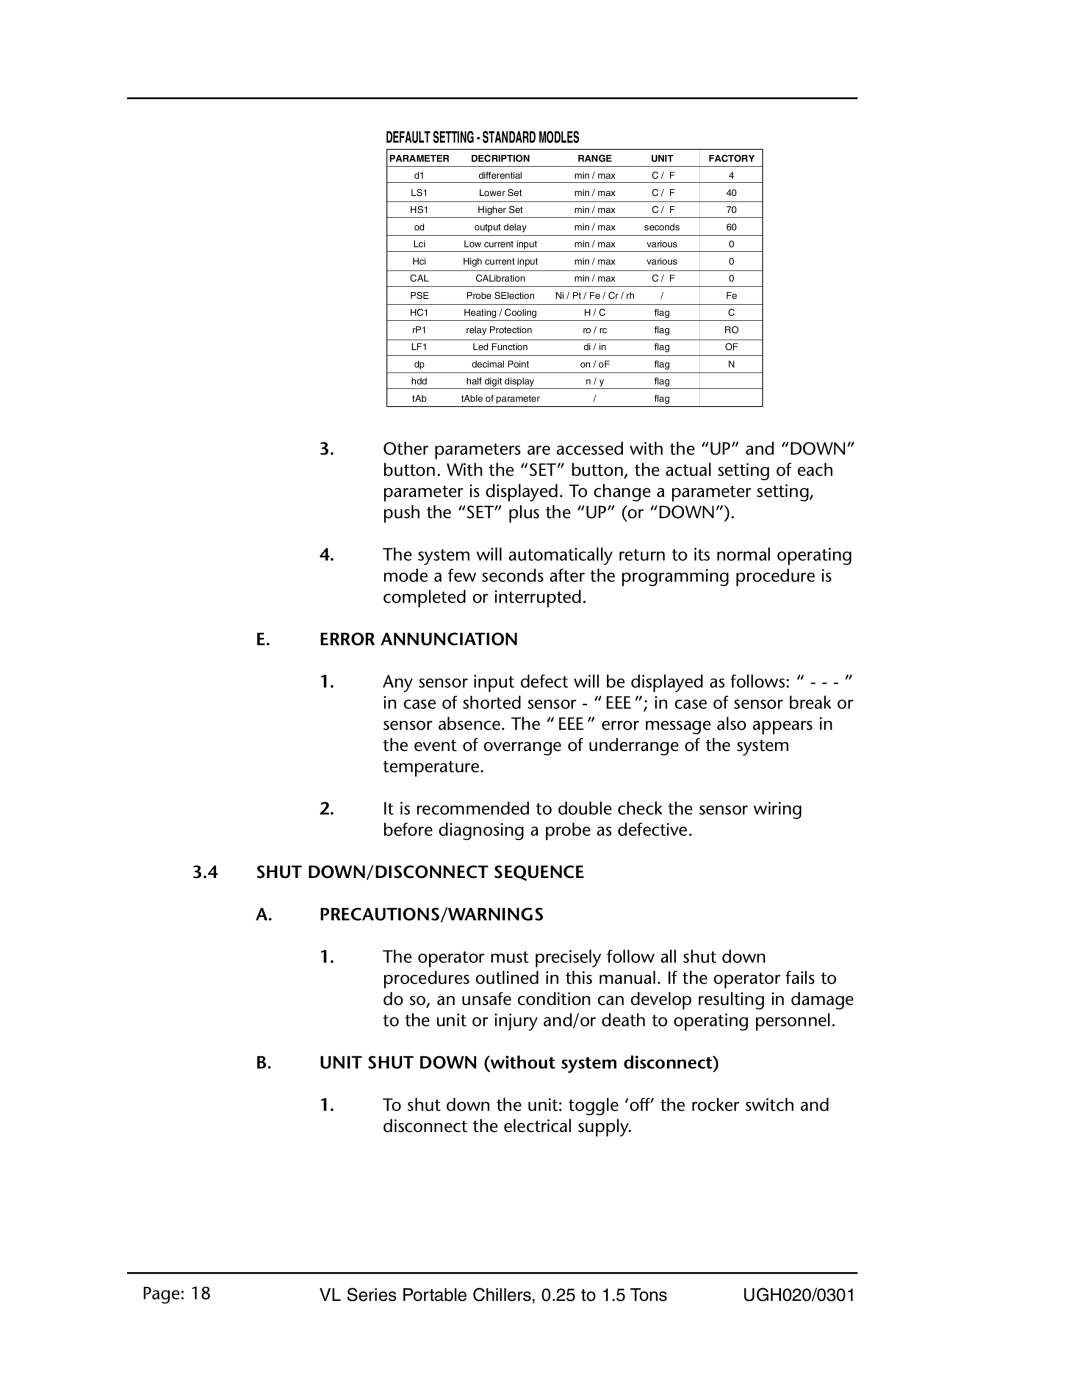 Conair VL Series manual E.Error Annunciation, 3.4SHUT DOWN/DISCONNECT SEQUENCE, A.Precautions/Warnings 